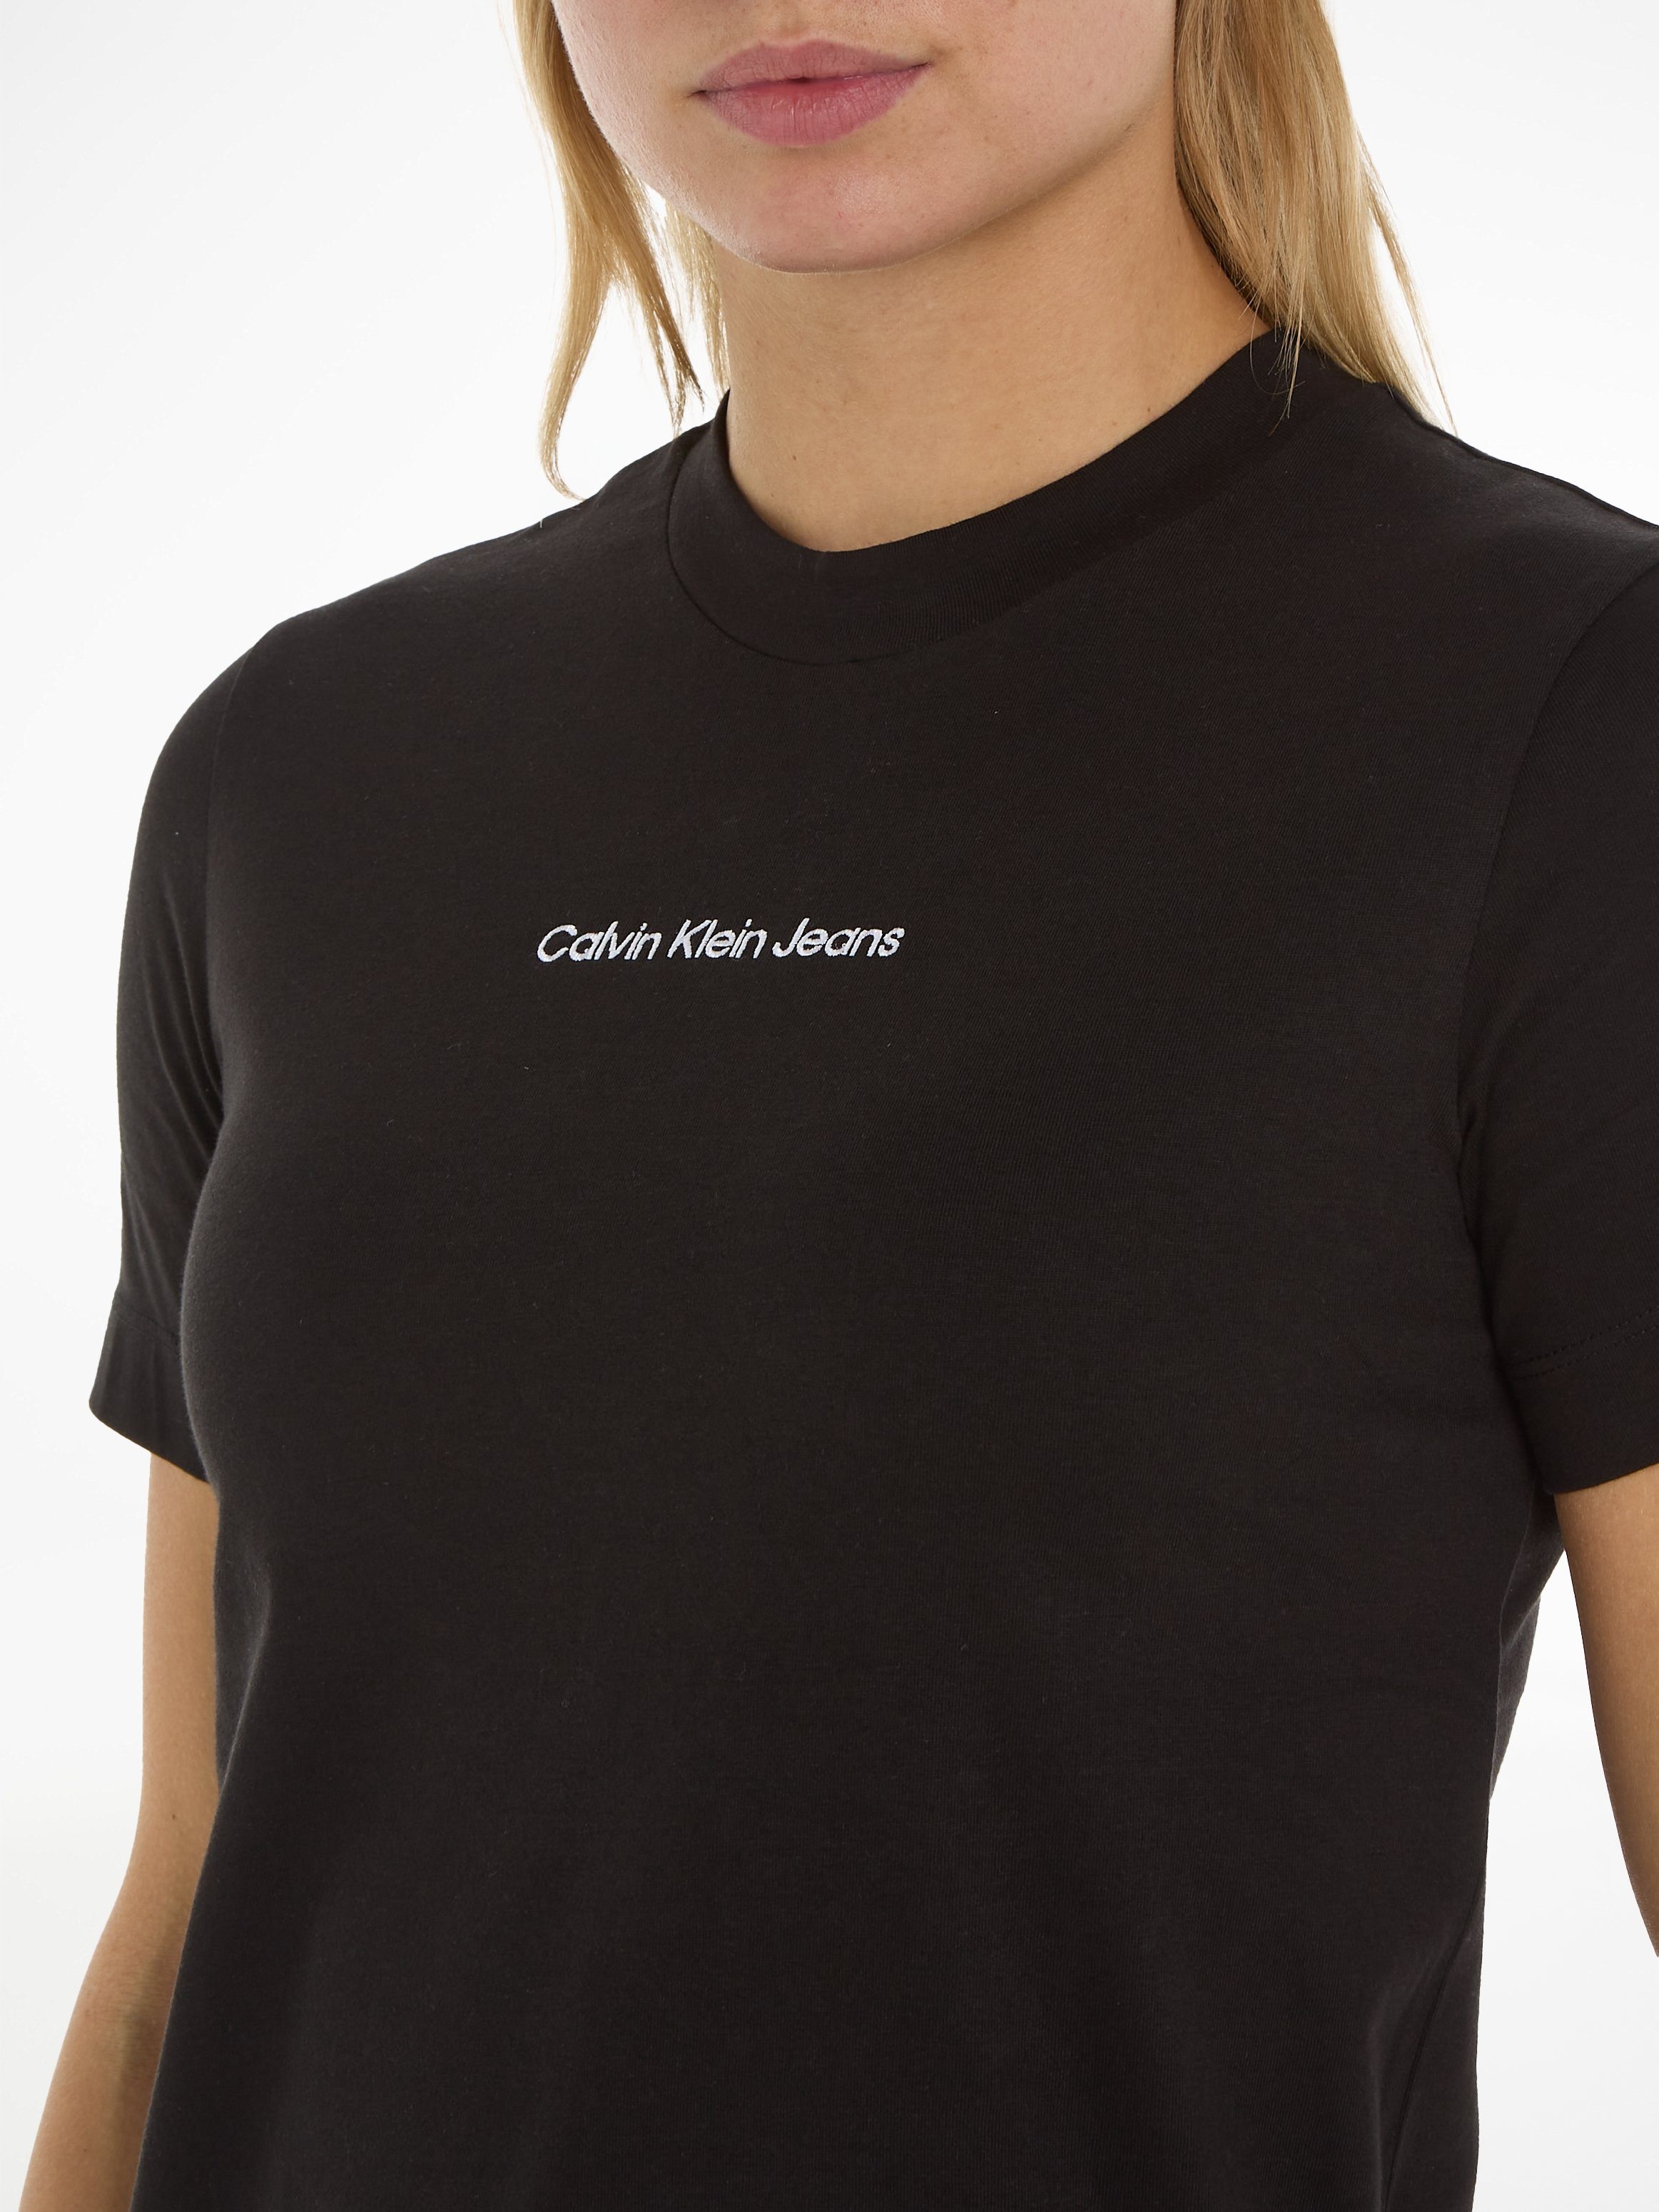 Calvin Klein Ck Jeans STRAIGHT Markenlabel INSTITUTIONAL TEE Black mit T-Shirt